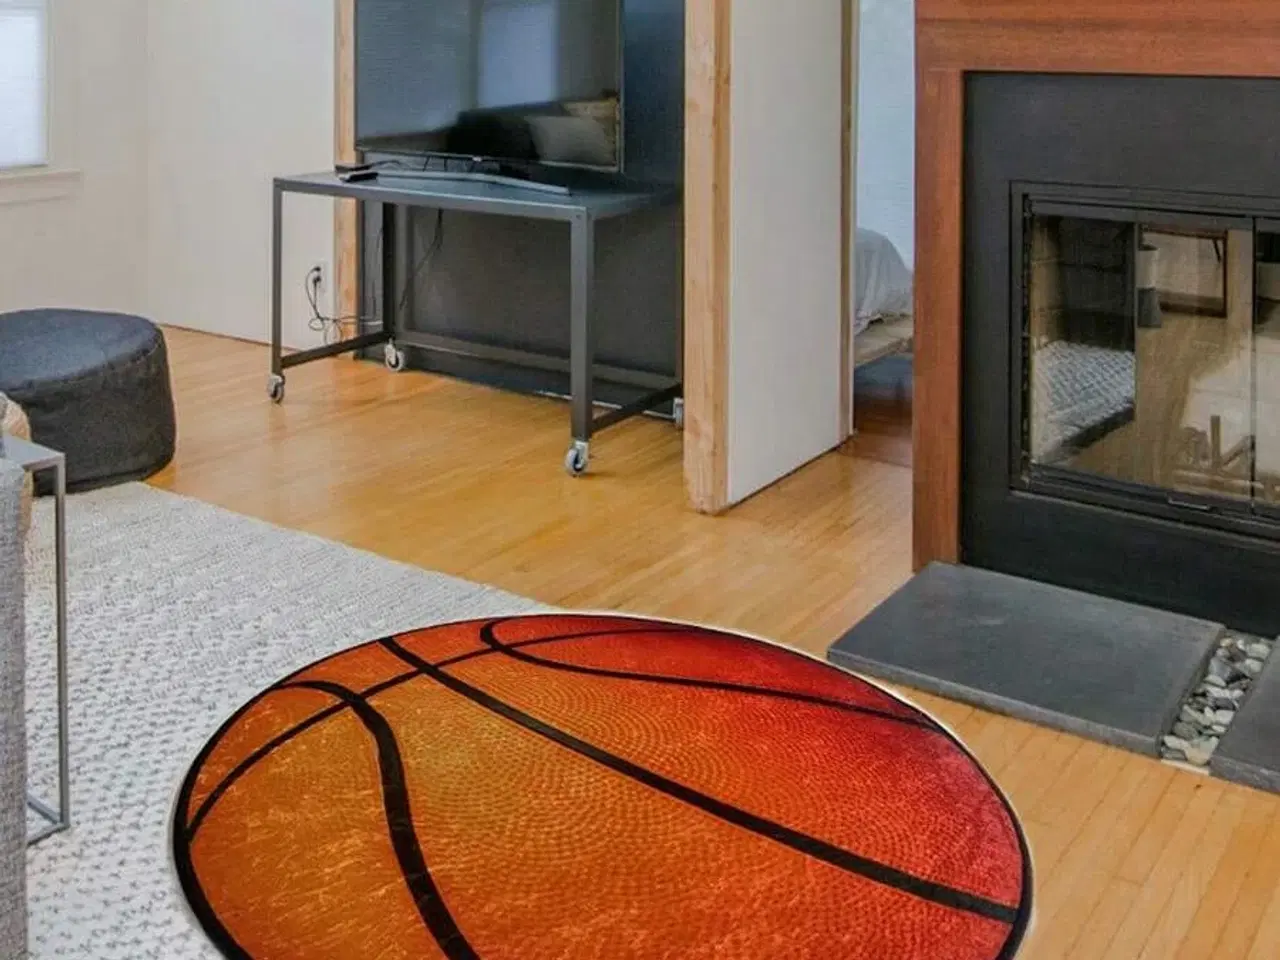 Billede 2 - gulvmåtte i basketball form runde tæpper